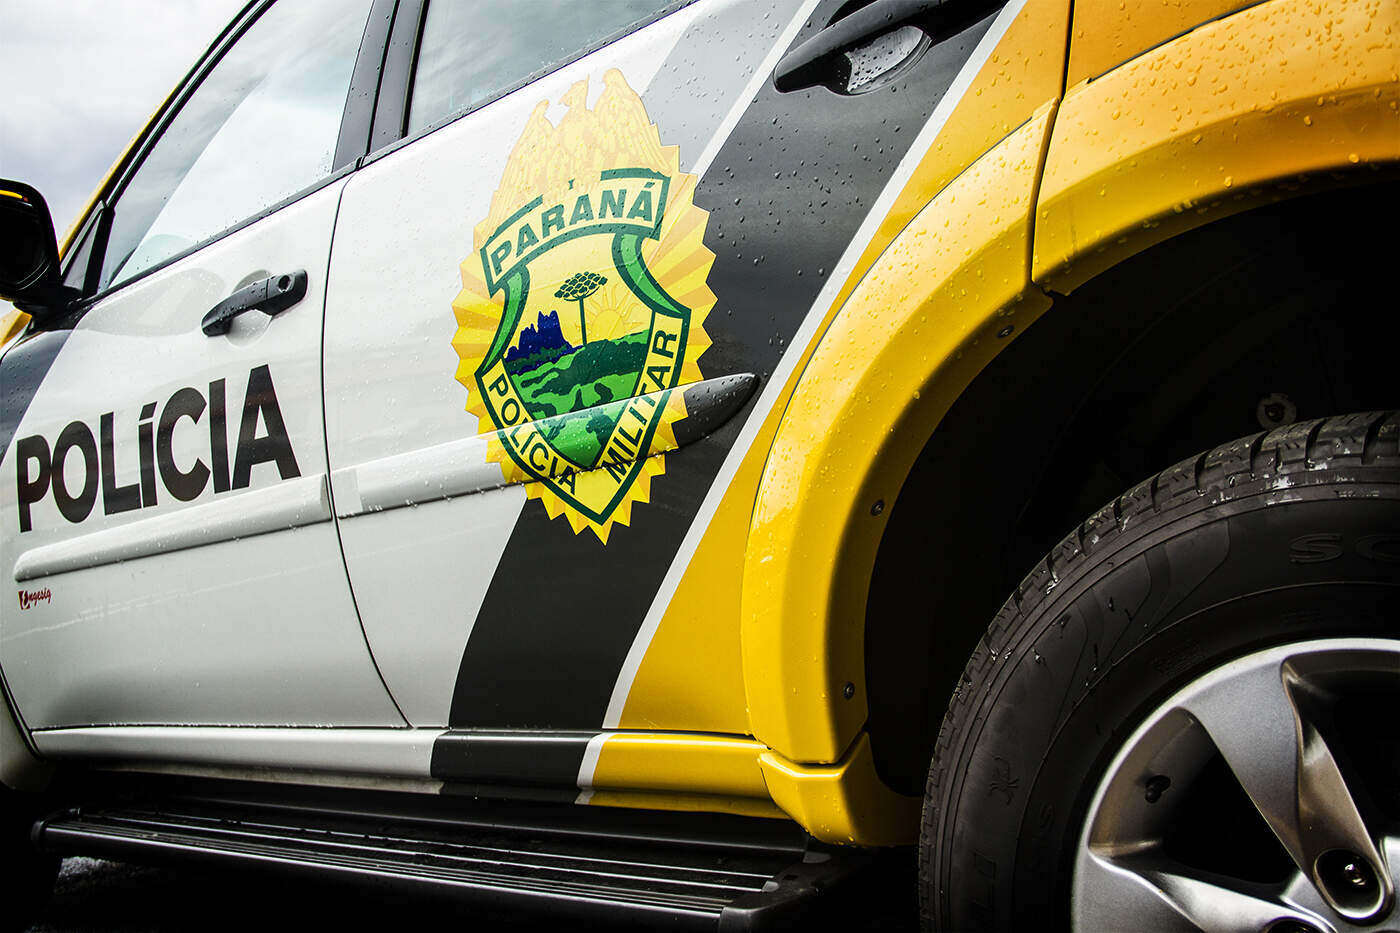 Família é encontrada morta com golpes de faca em Umuarama; polícia investiga